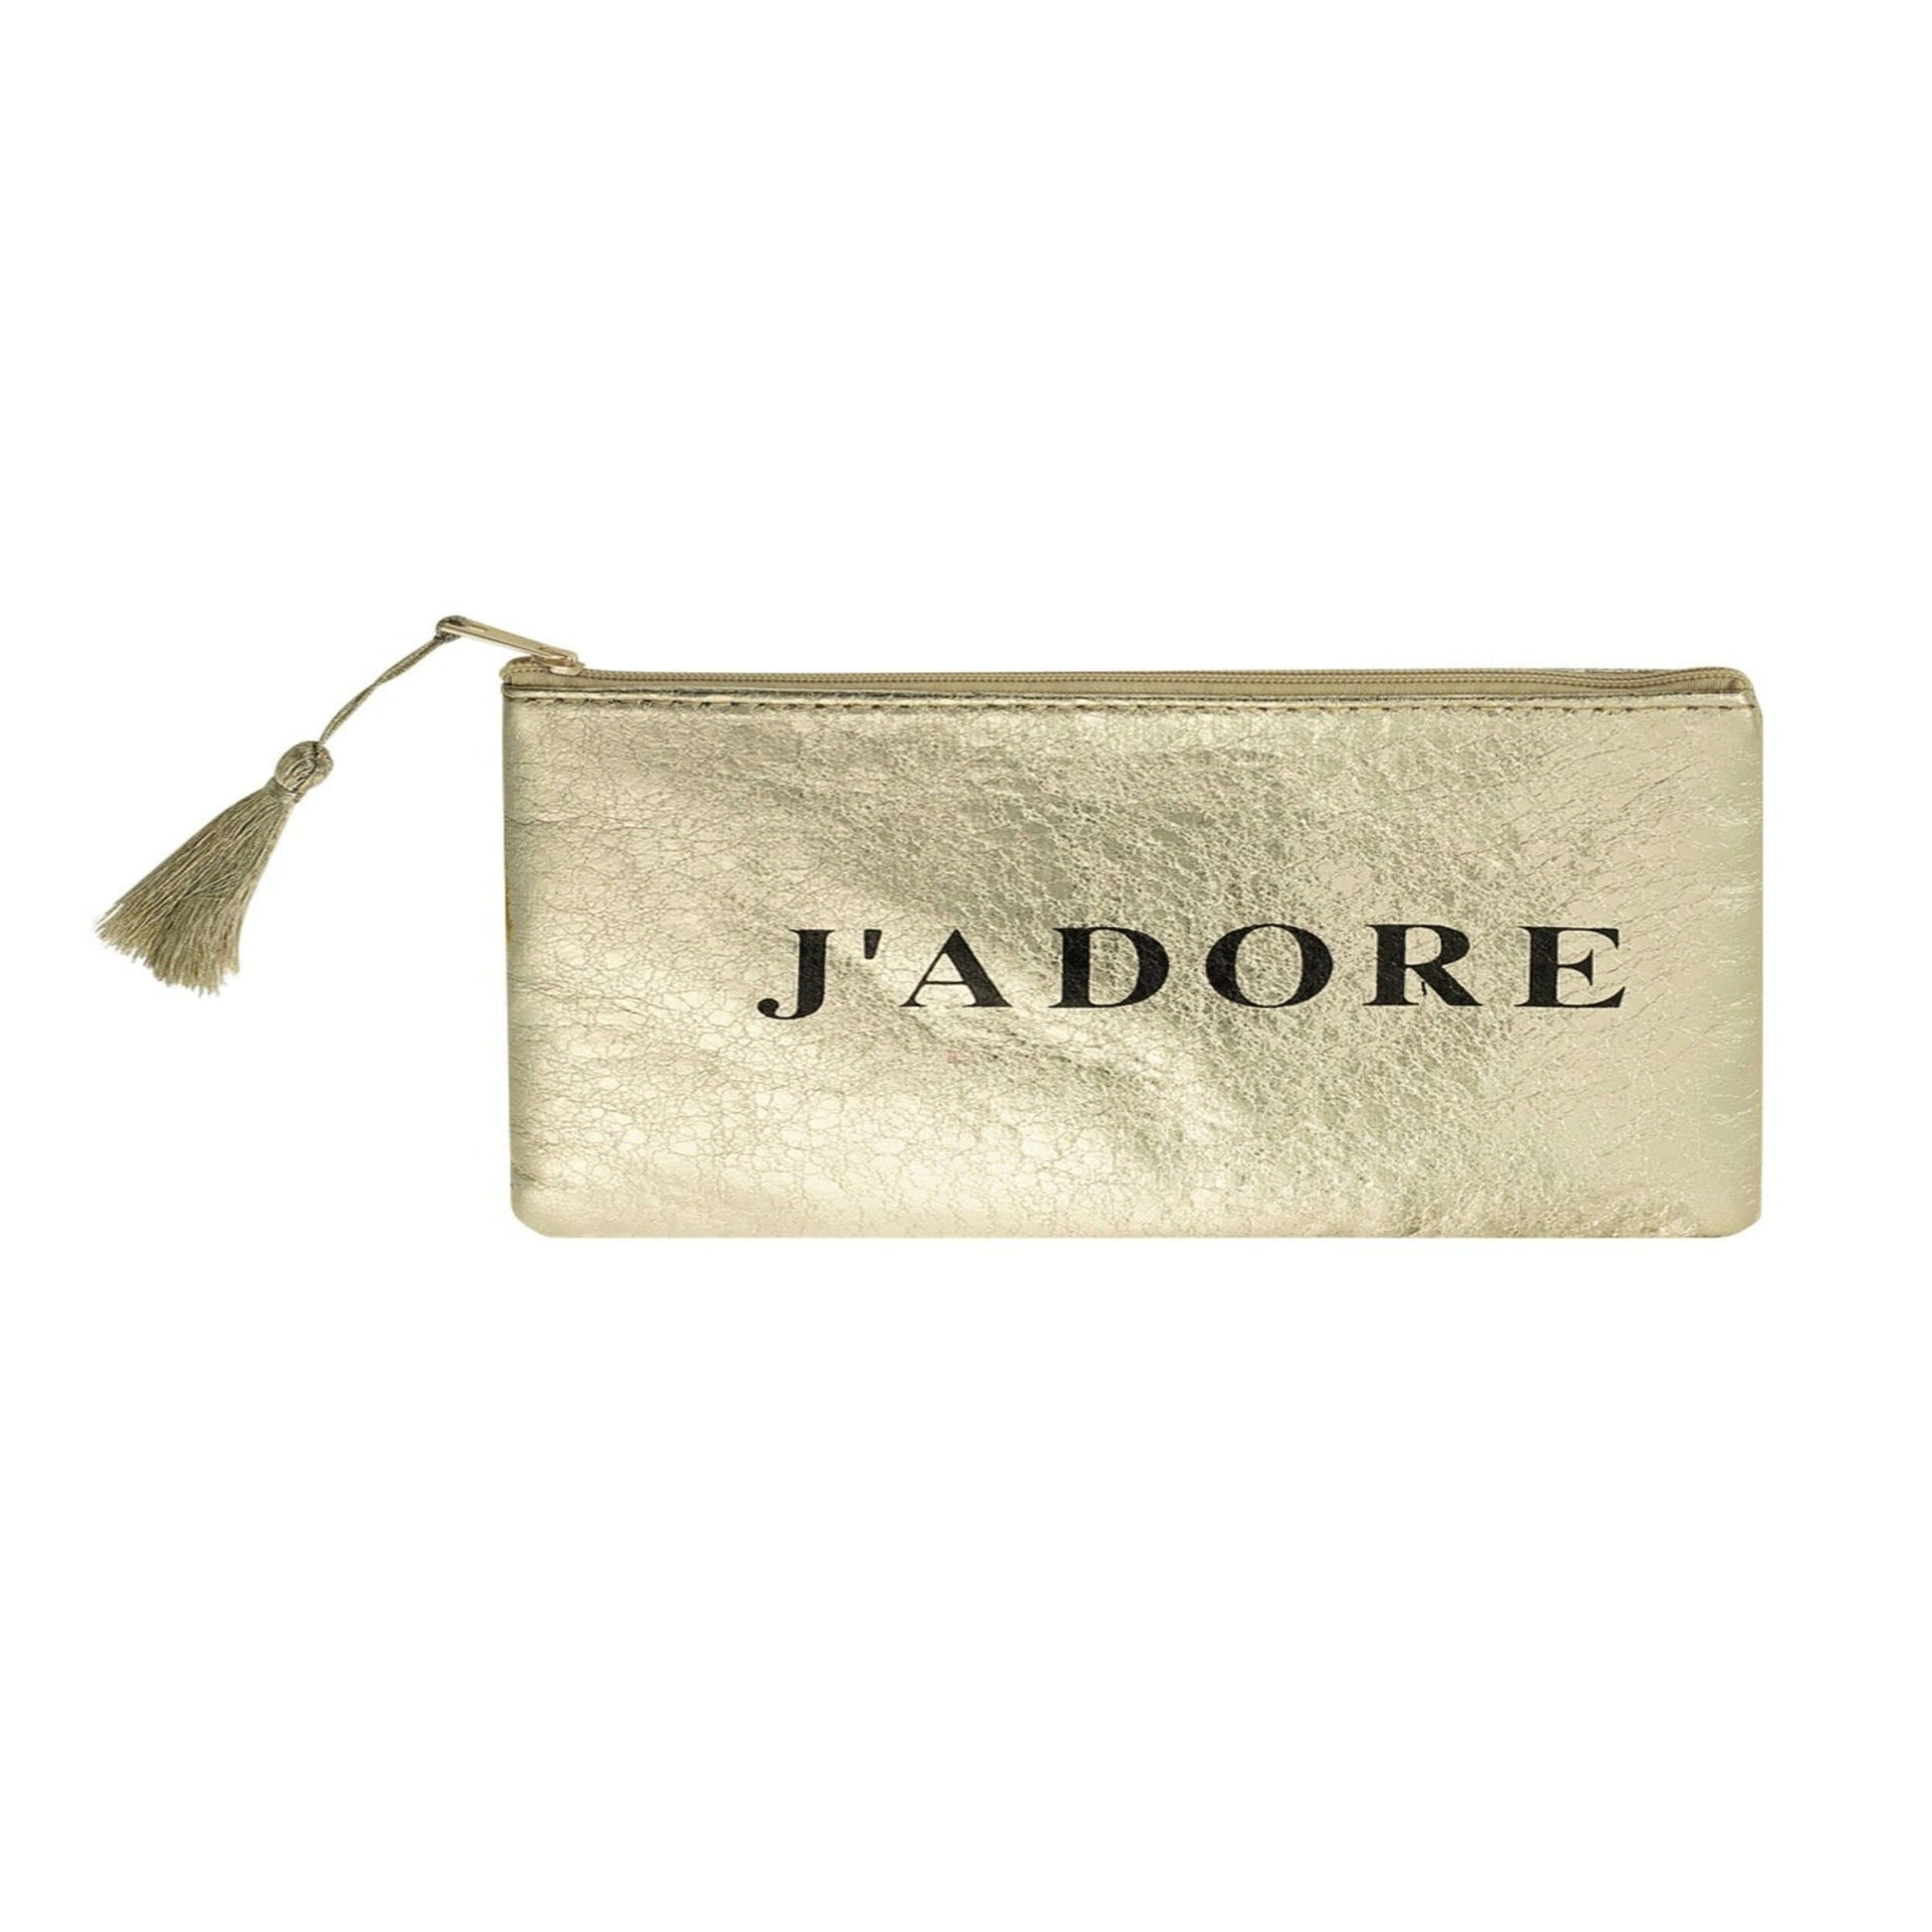 Glänzende Gold-Kosmetiktasche mit elegantem 'J'adore' Aufdruck, perfekt für Lippenstifte, Parfümflaschen und Beauty-Accessoires in der Handtasche oder als Handtäschchen.